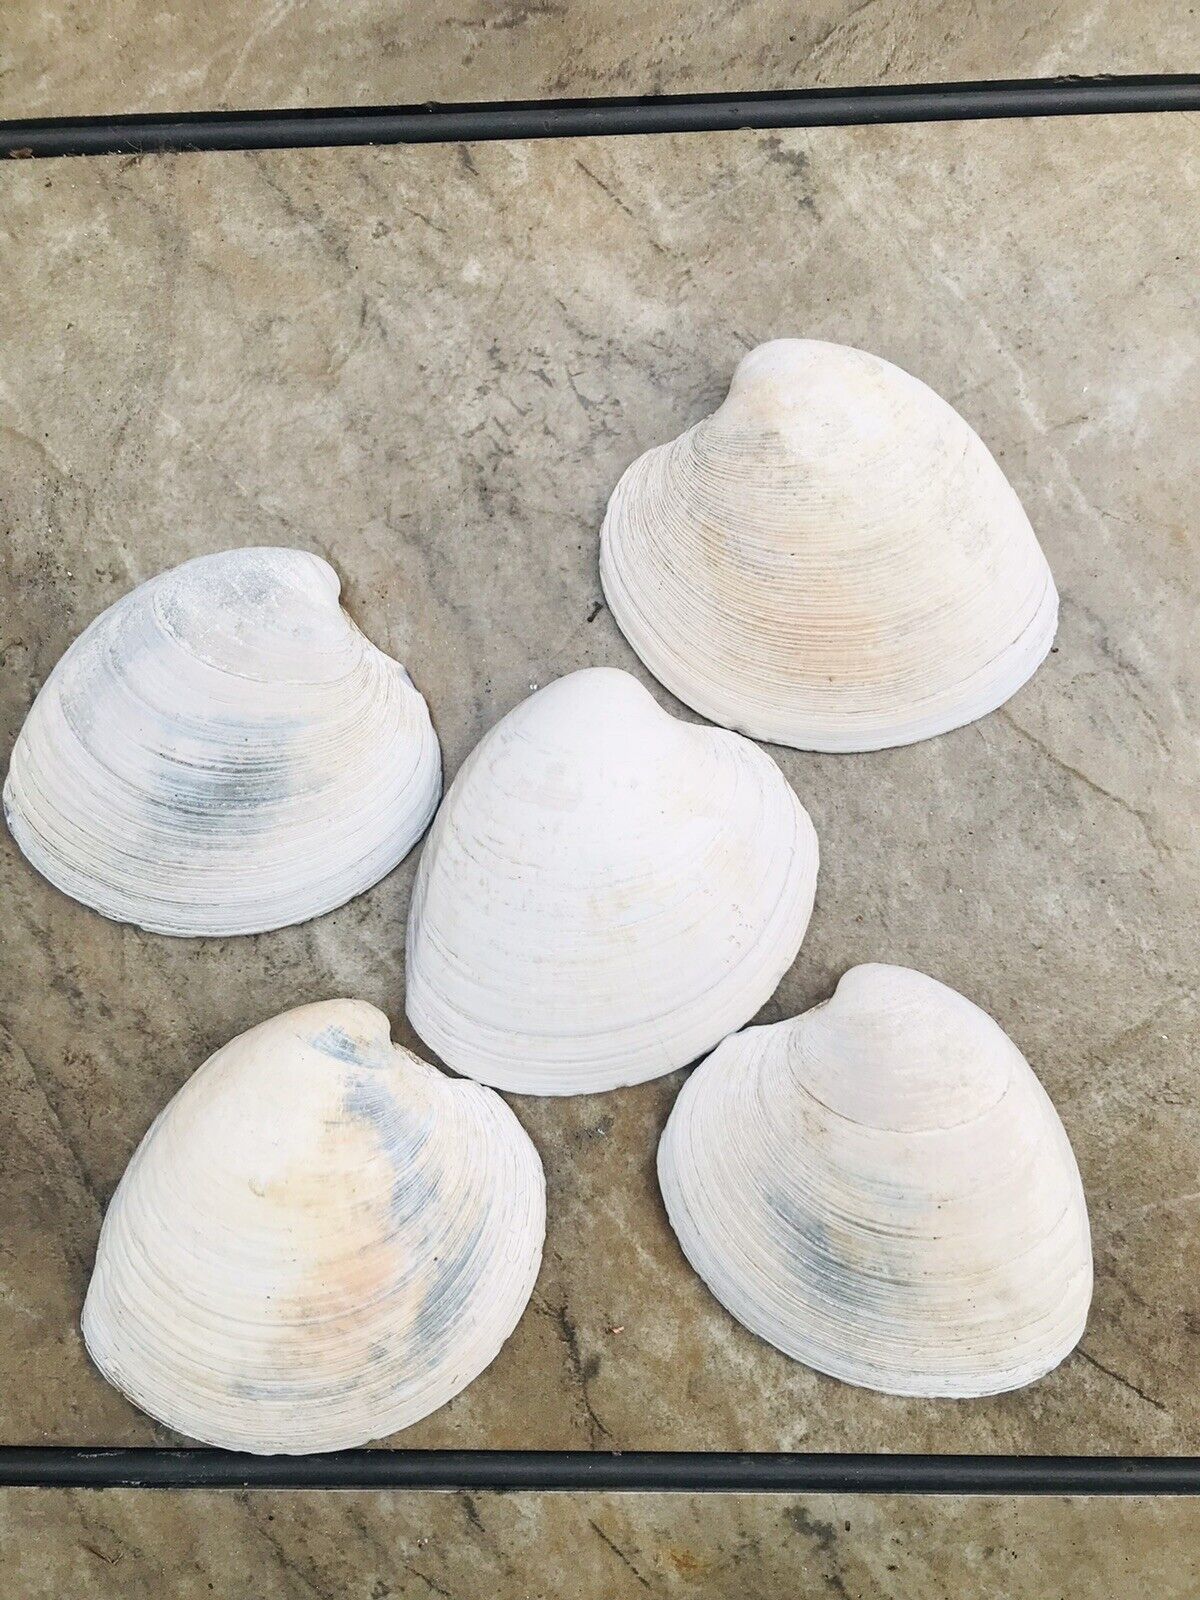 Lot of 5 Natural Hard Clam Shells, .4” Approx.  Long Seashells Atlantic Ocean